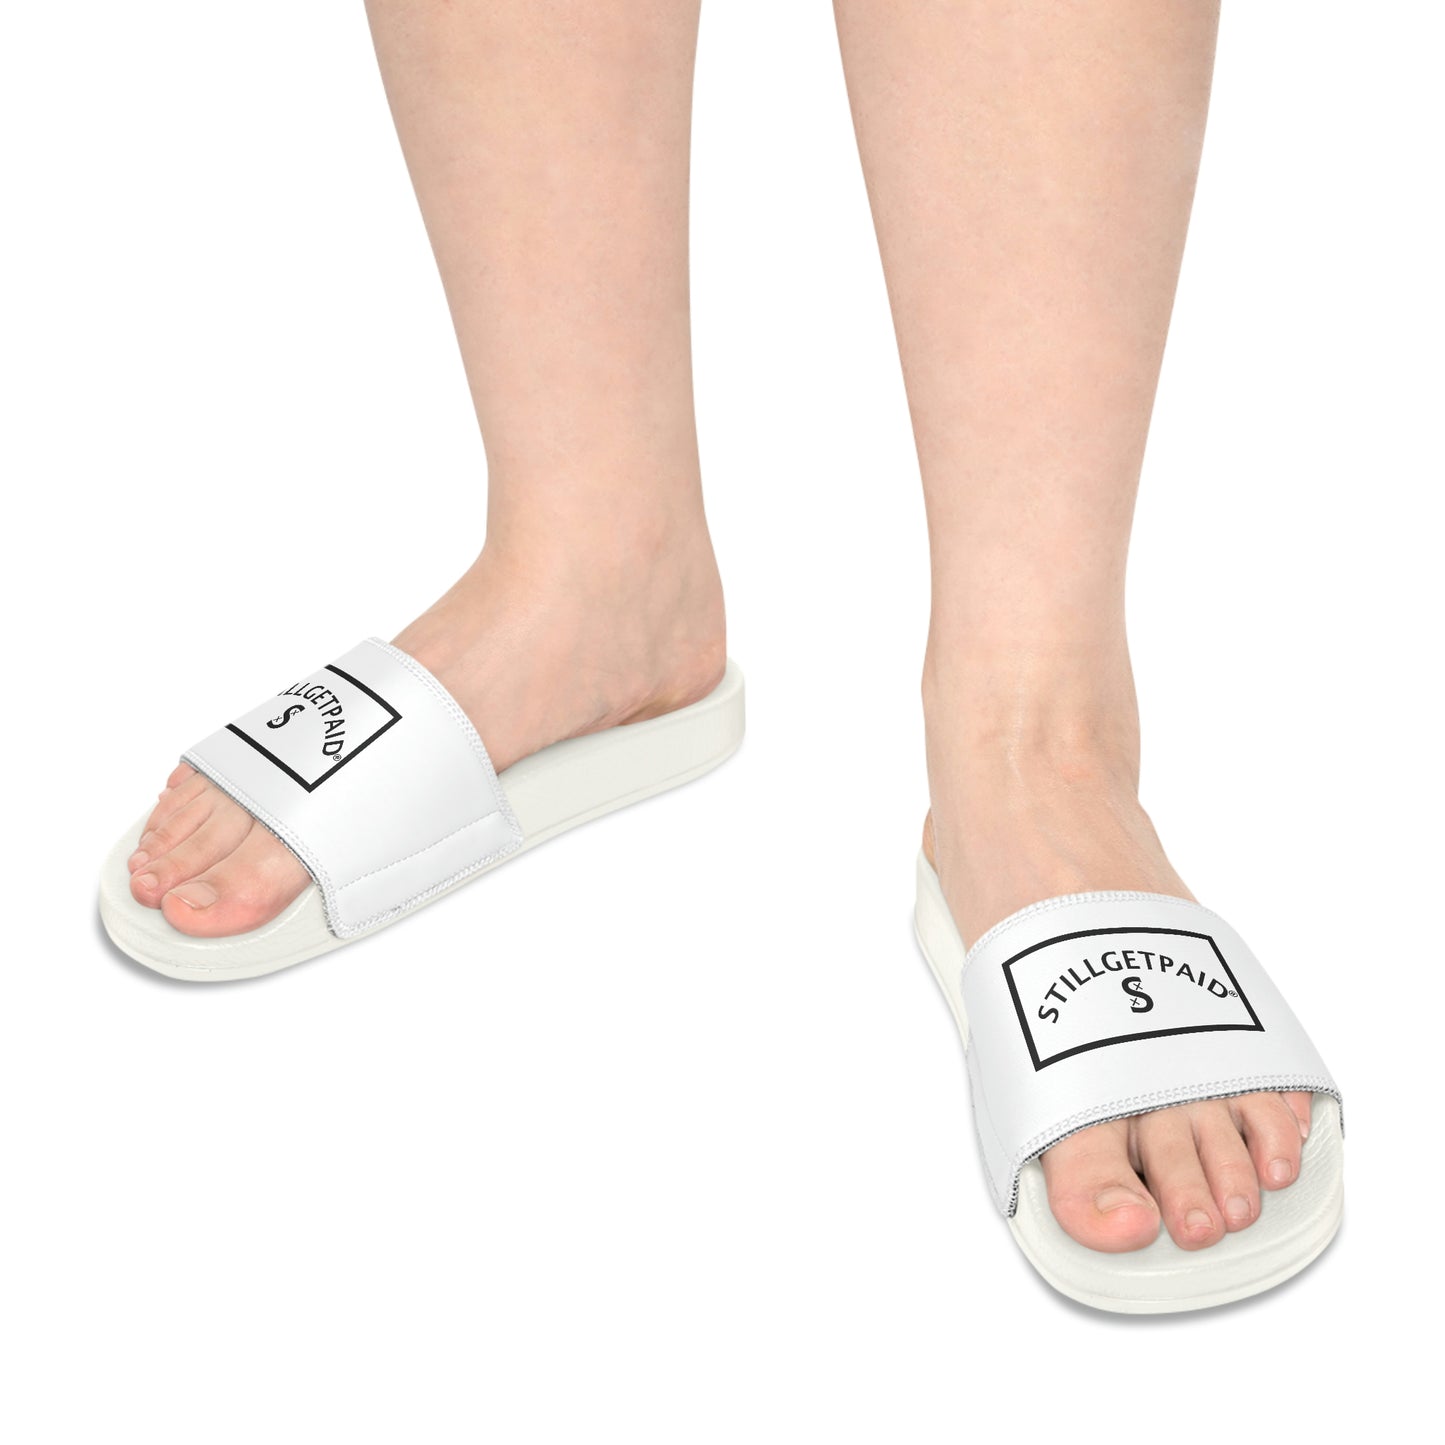 STILLGETPAID®️ APPAREL Women's Slide Sandals